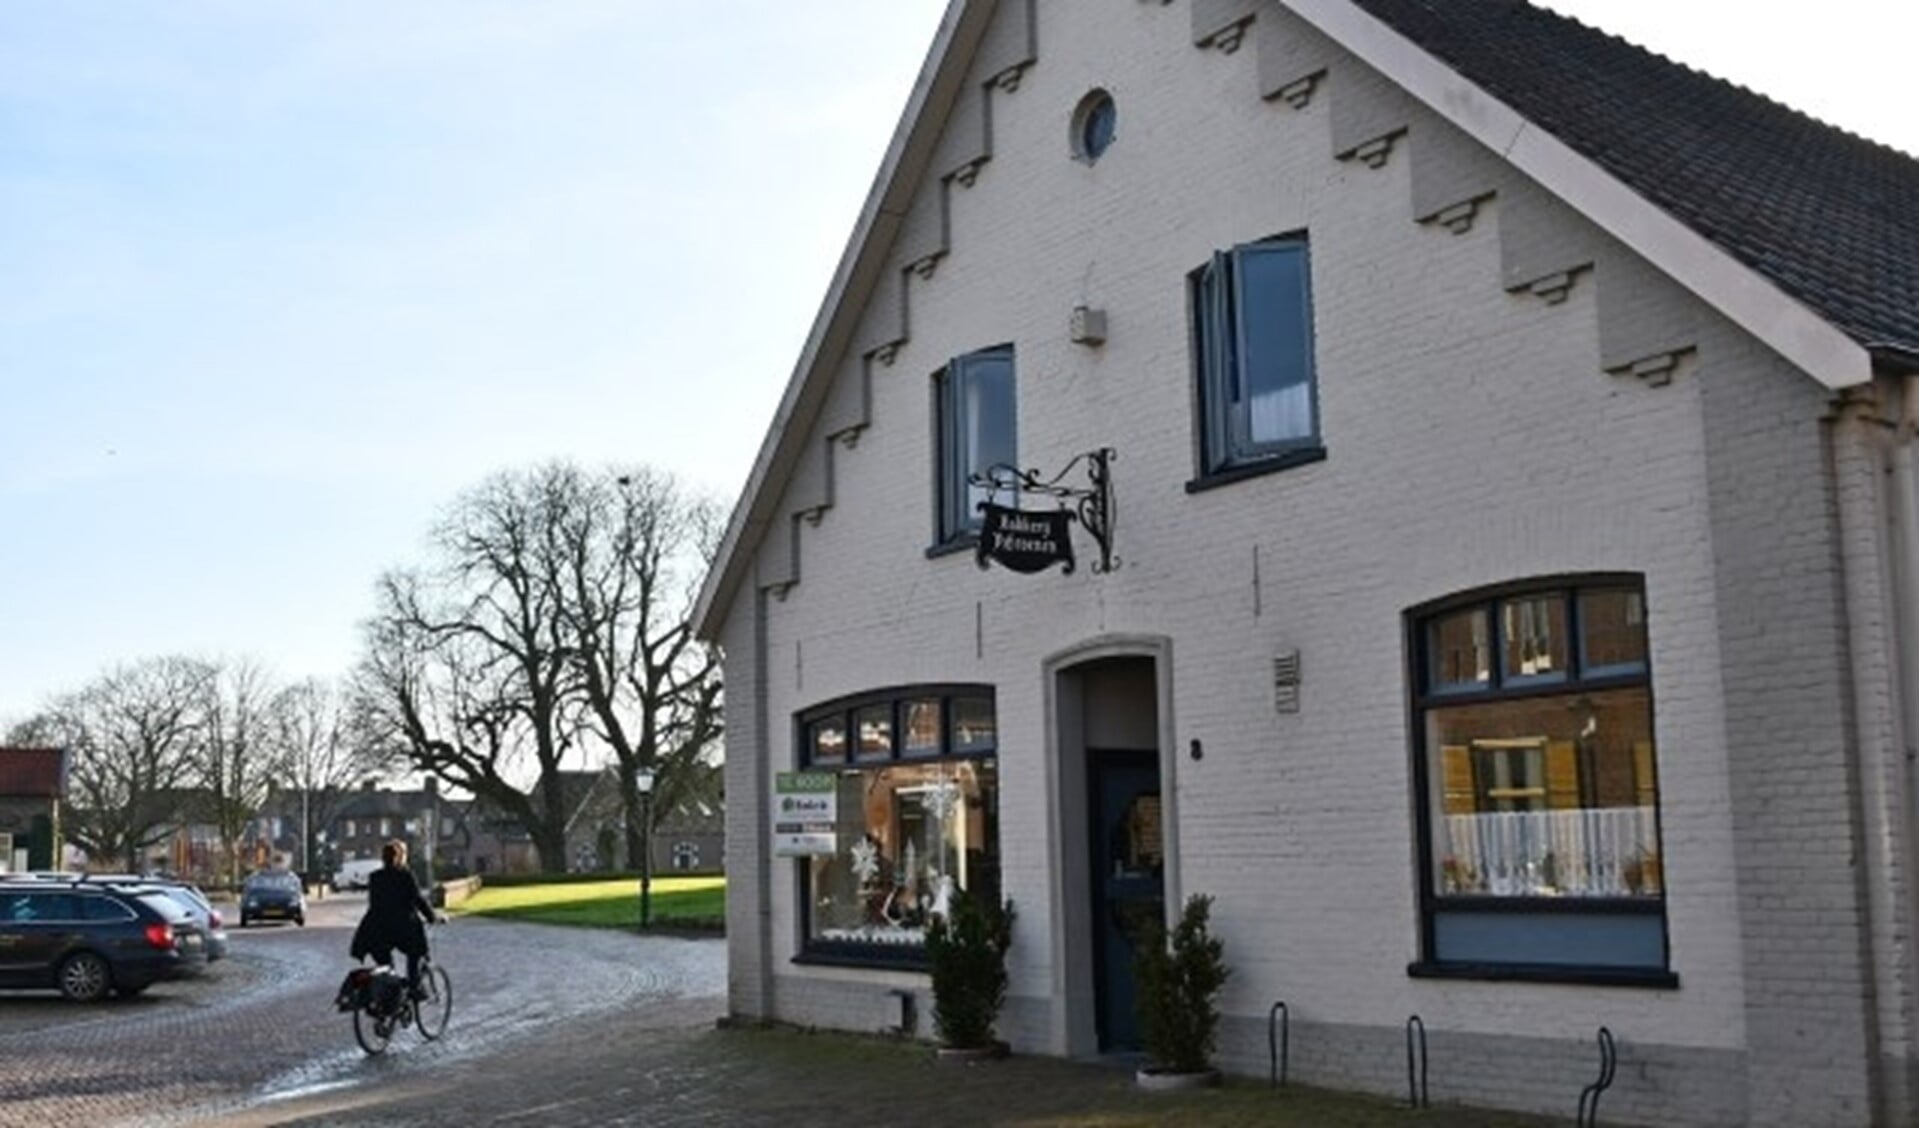 De bakkerij en de winkel van Peter en Jeanne-Susan is gesloten. Het gebouw is  beeldbepalend voor het dorp Pannerden. (foto: Ab Hendriks)